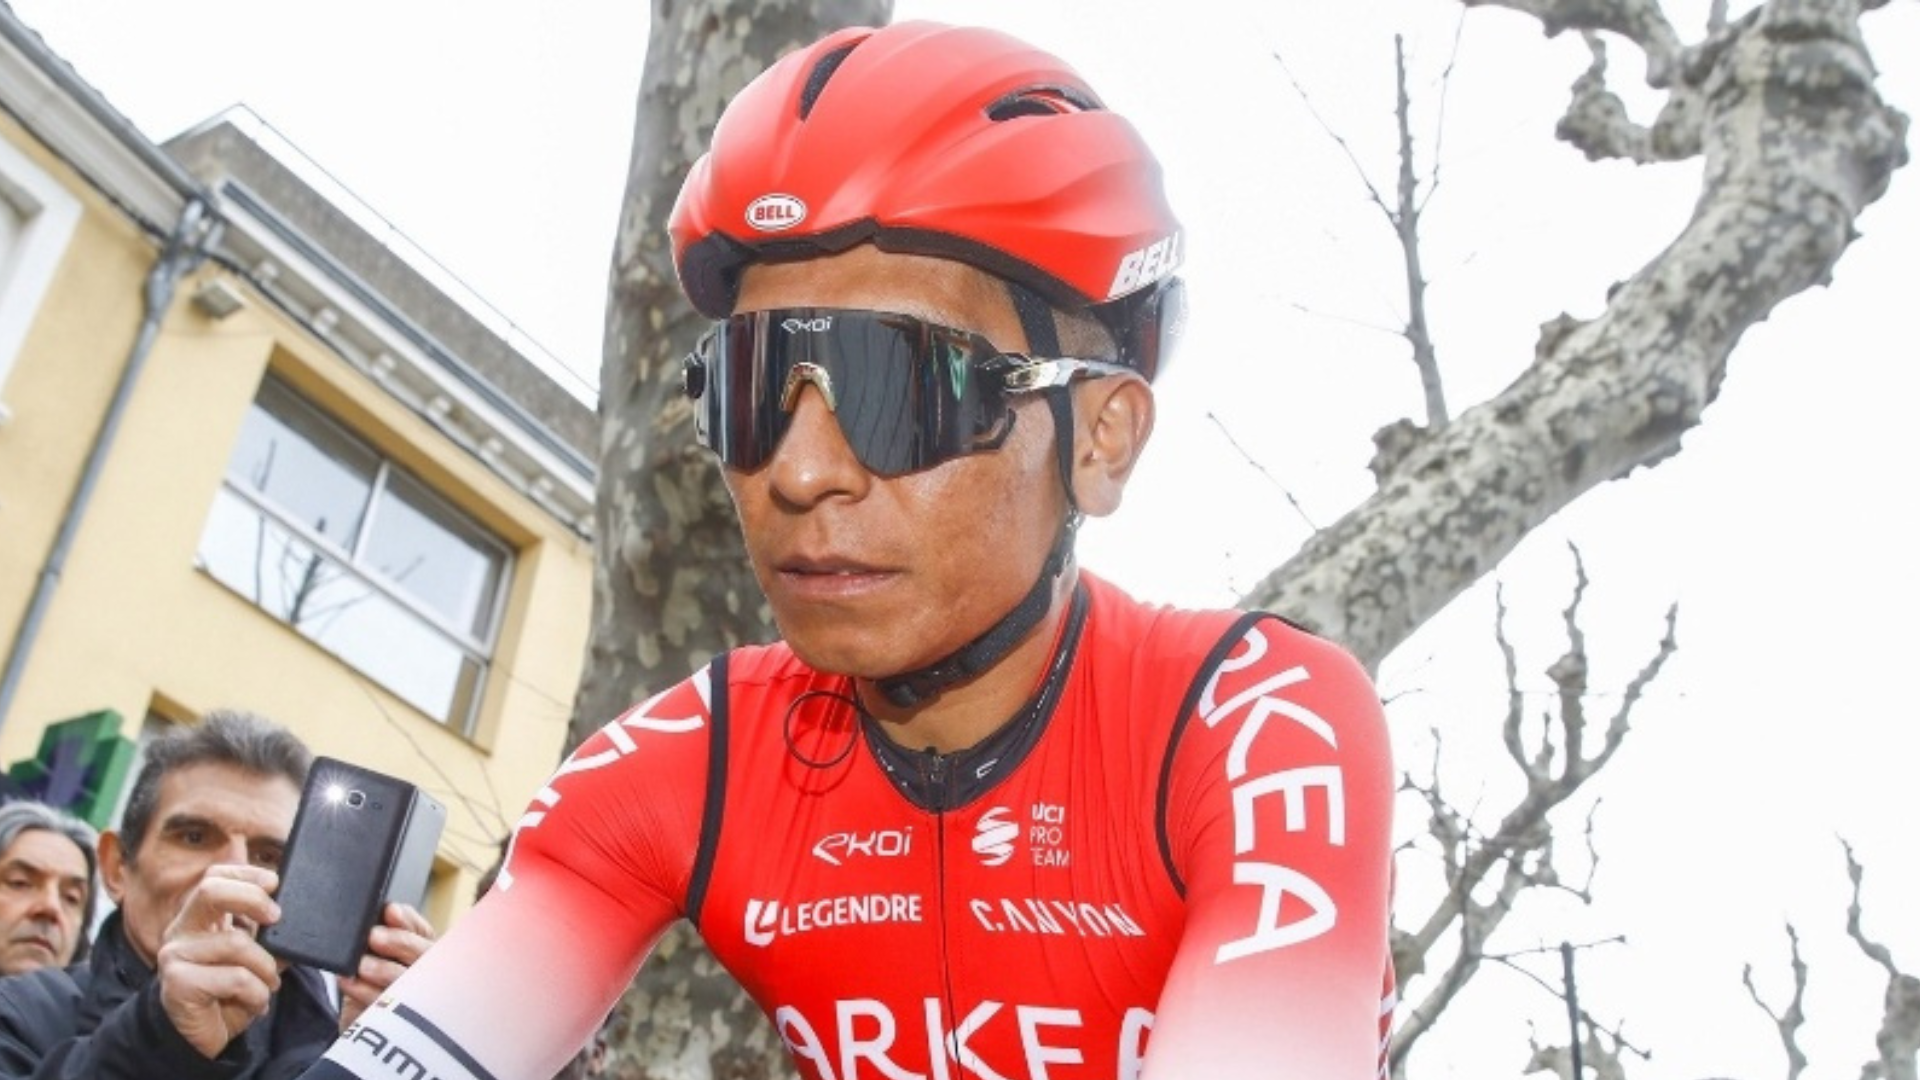 Nairo Quintana ascendió puestos en el más reciente ranking UCI, a pesar de que no compite hace rato